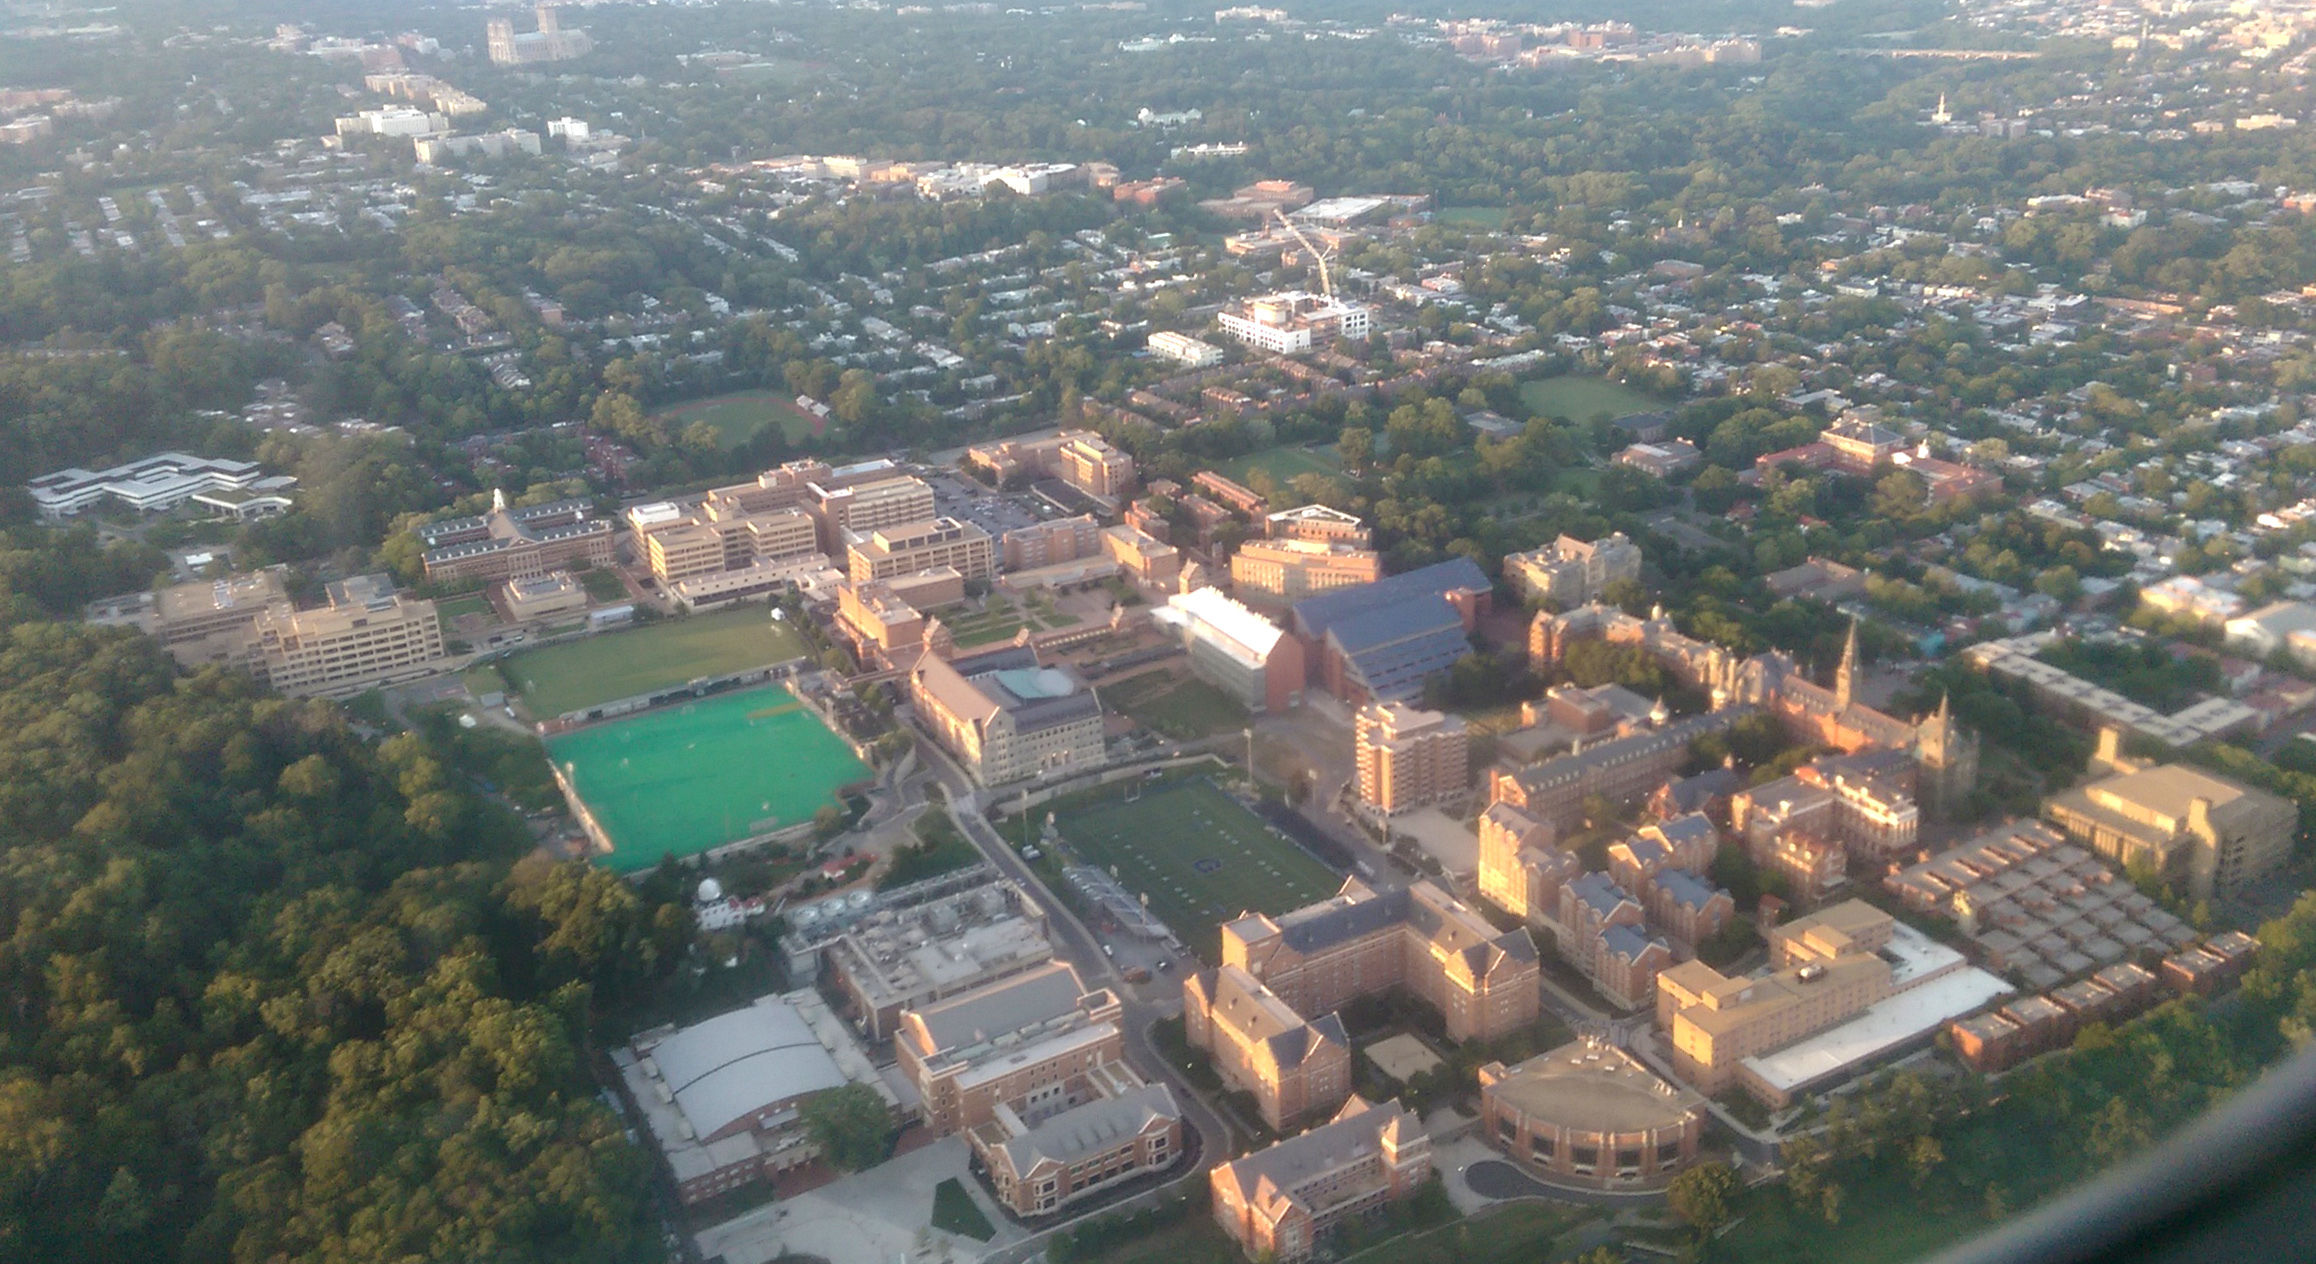 Georgetown 喬治城大學 - 美國最古老的大學之一，因地緣優勢國際色彩濃厚